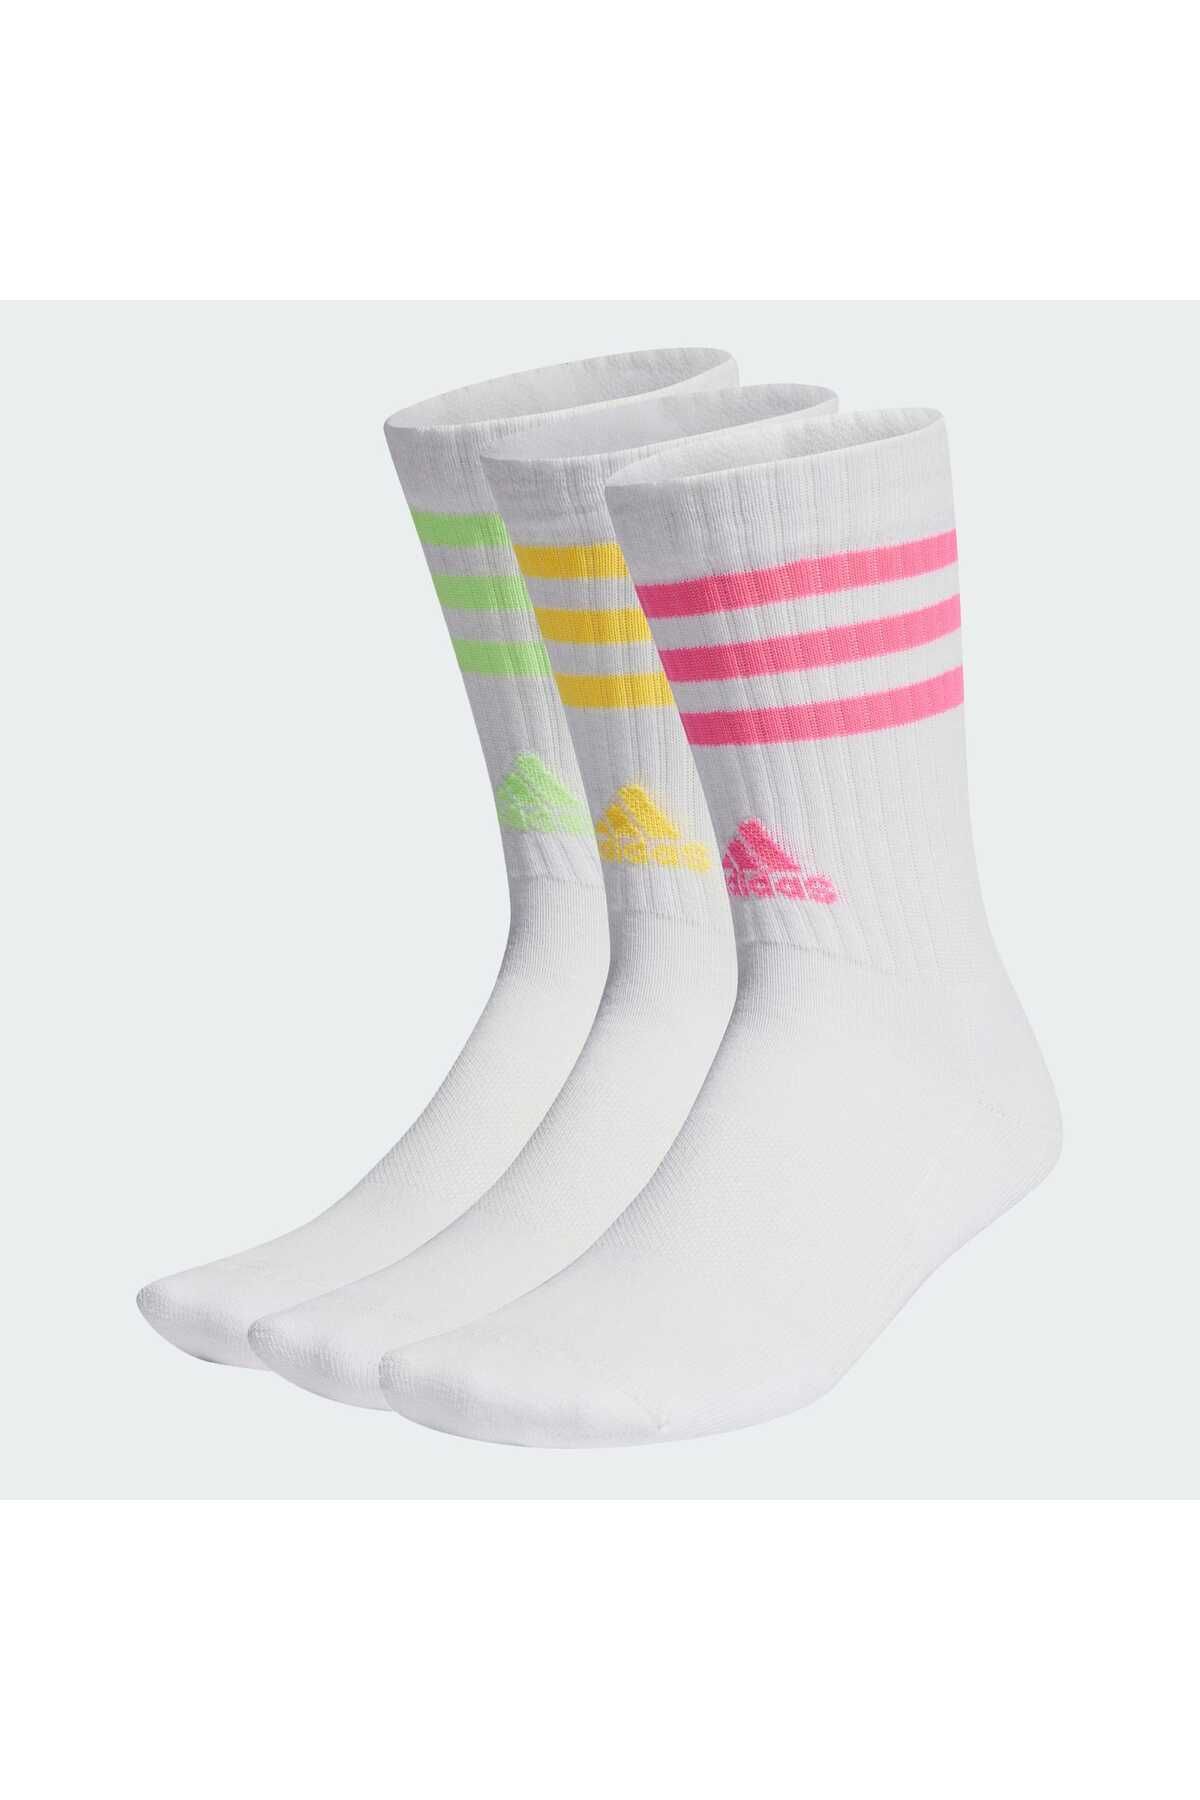 adidas 3-Stripes Yastıklamalı Bilekli Çorap - 3 Çift